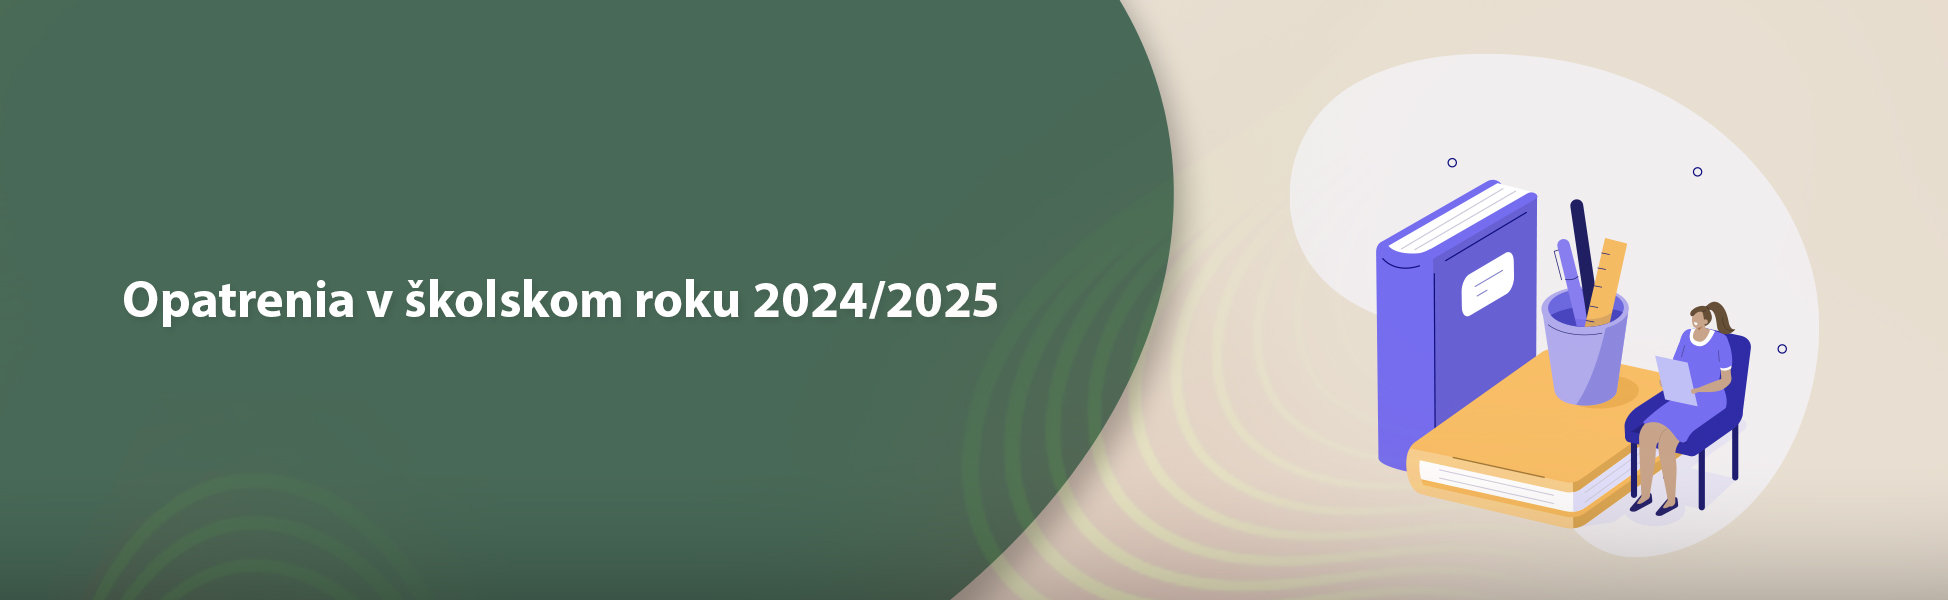 Opatrenia v kolskom roku 2024/2025